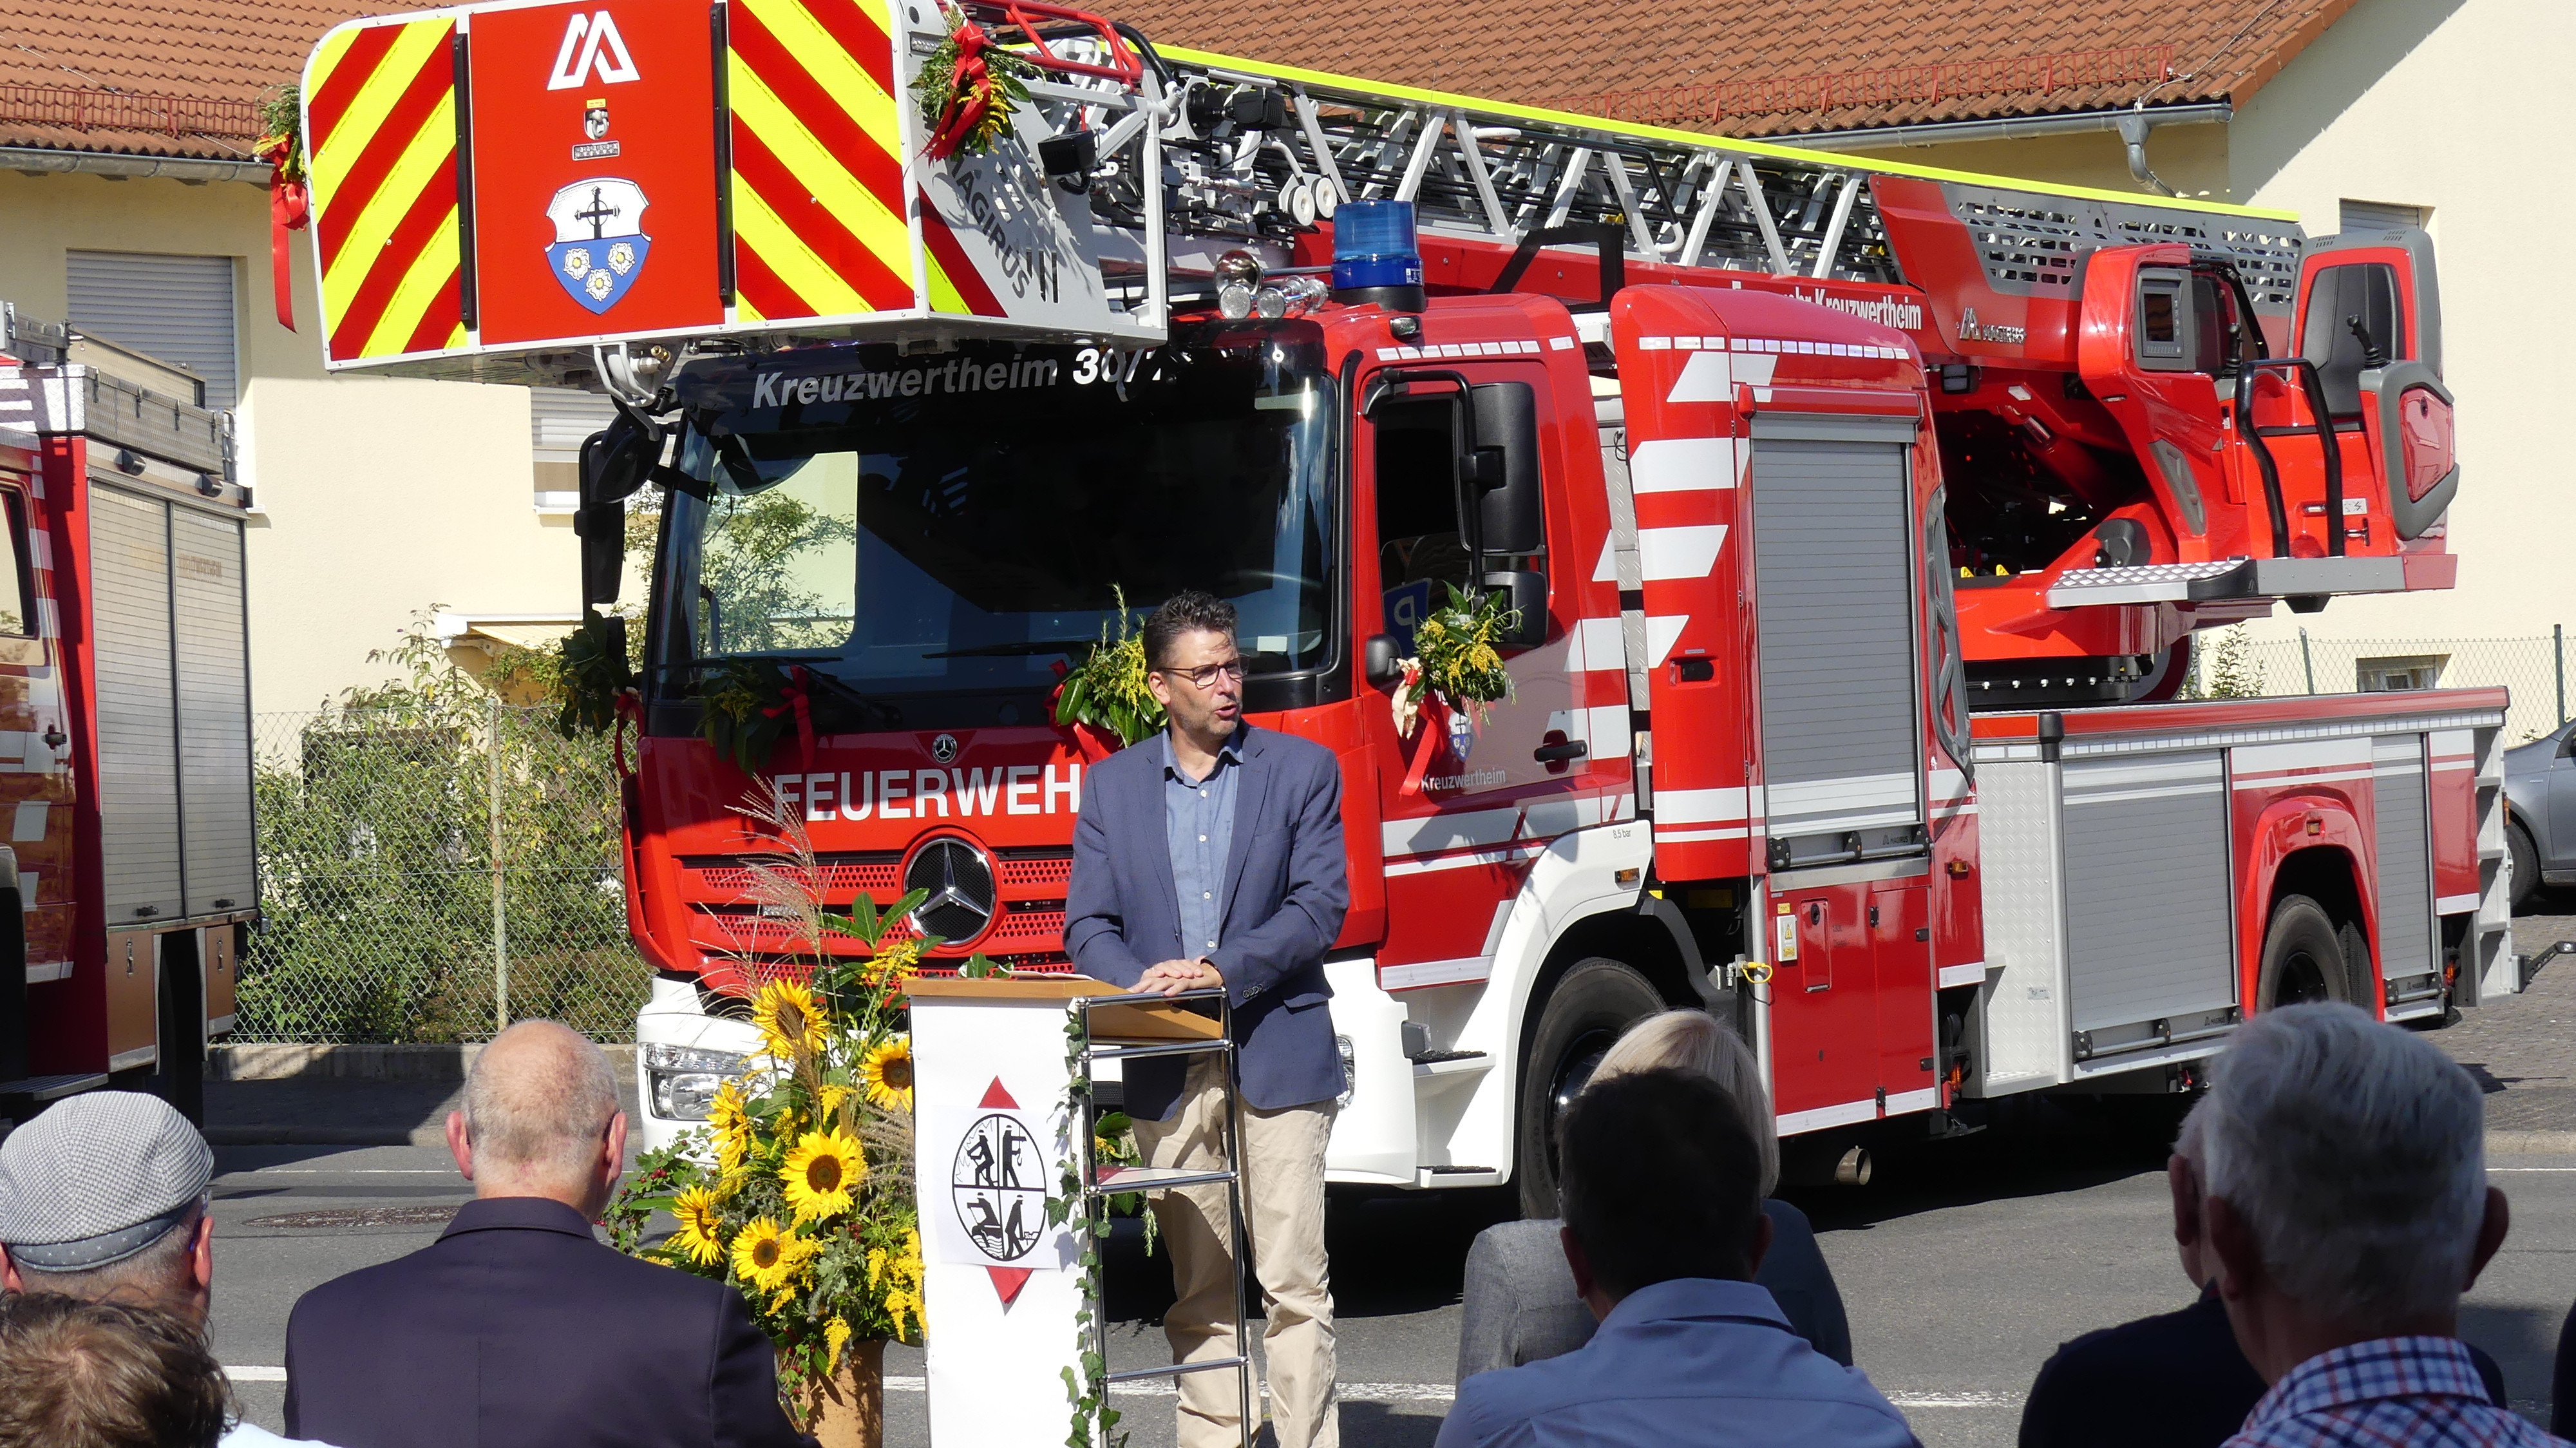 Festliche Segnung der neuen Drehleiter der Feuerwehr Kreuzwertheim 